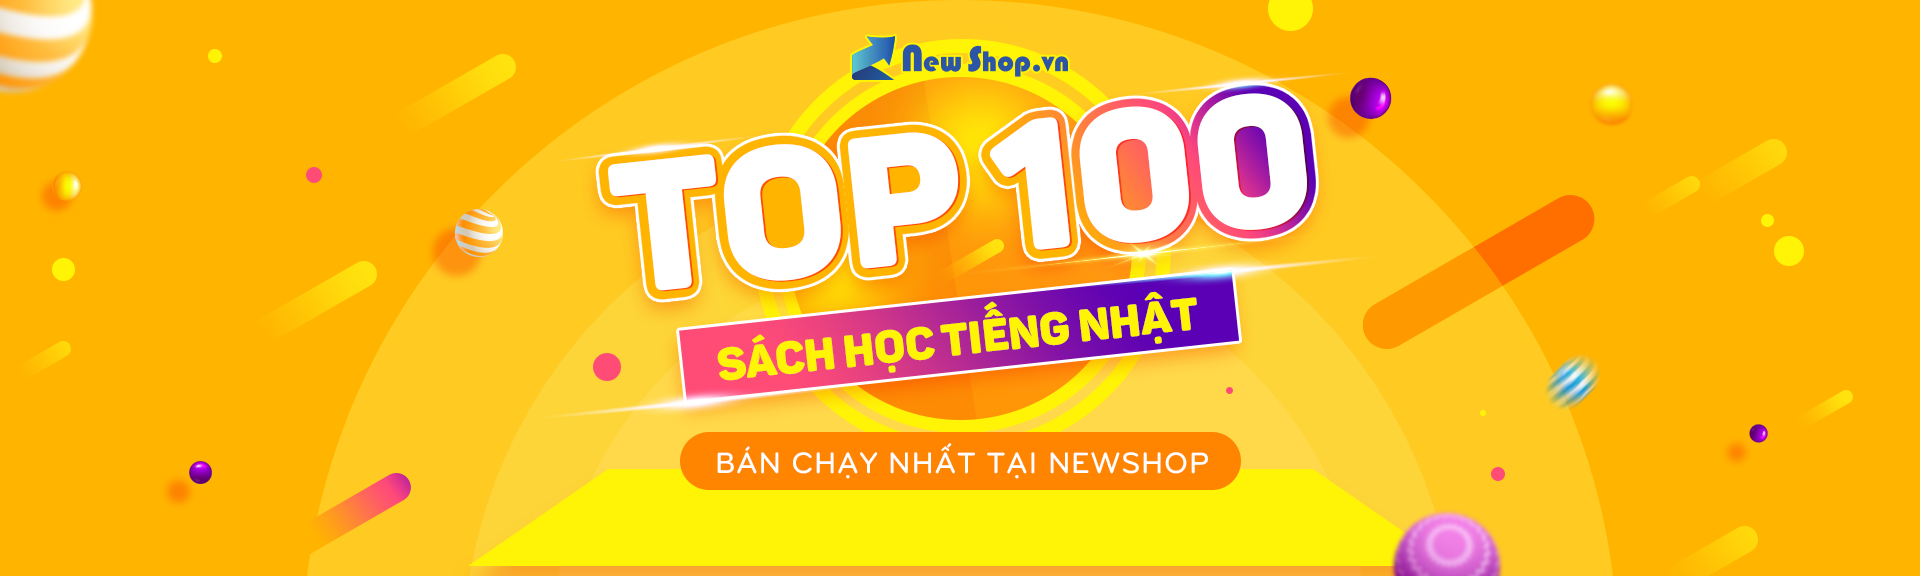 Top 100 Sách Học Tiếng Nhật Được Bán Chạy Nhất Tại Newshop.vn